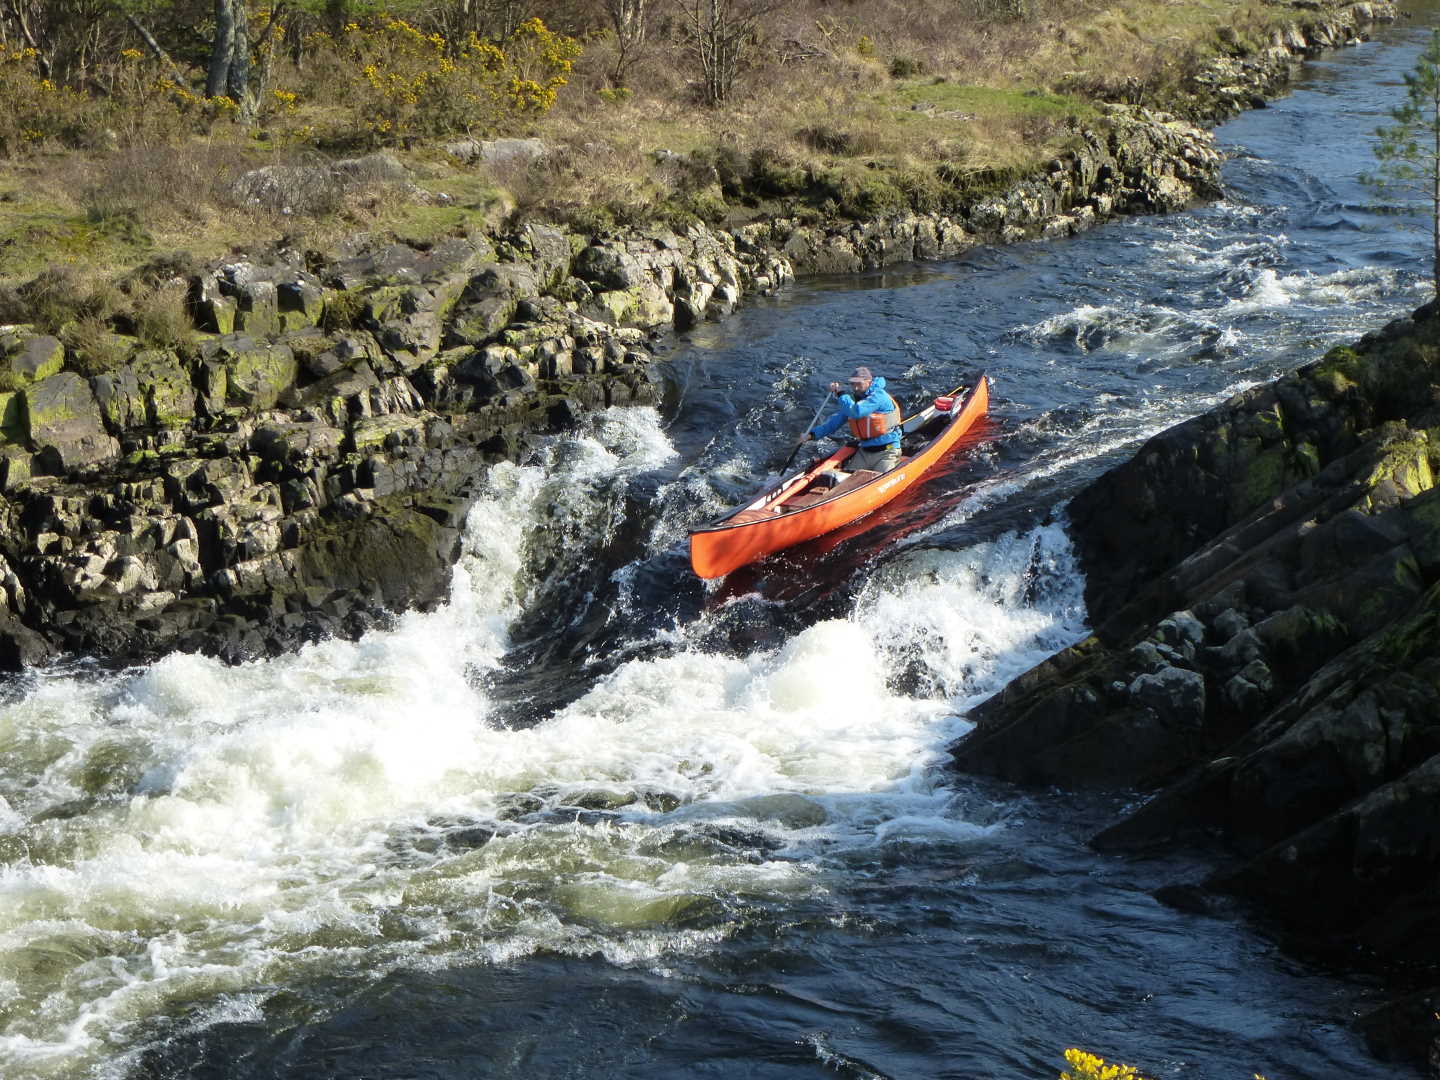 Simon kayaking down a rapid